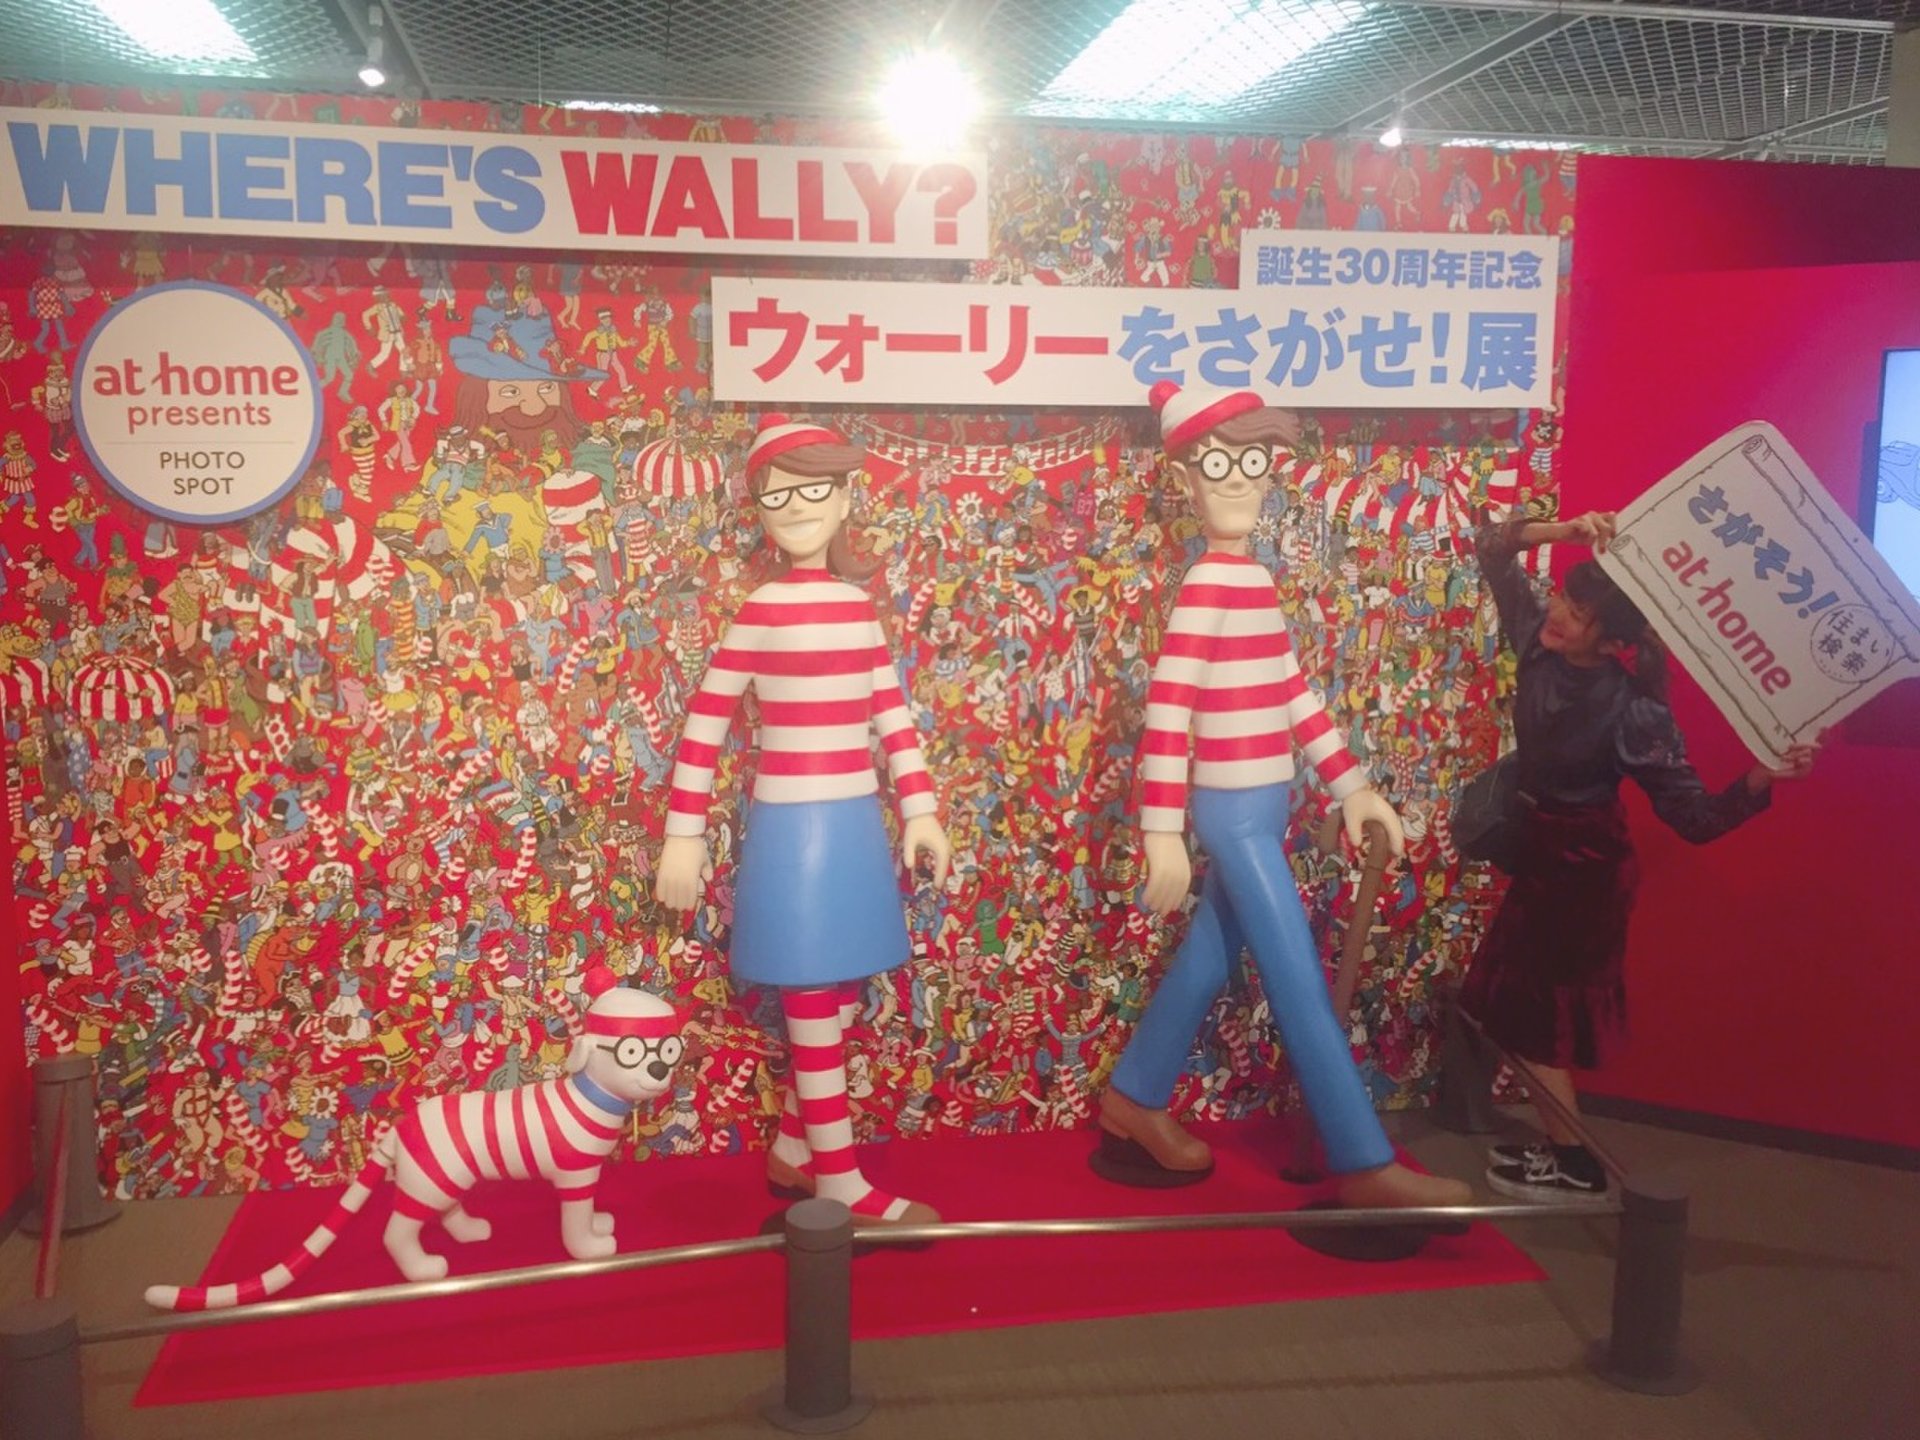 ウォーリー展in大阪詳細・写真スポット、混雑状況、限定グッズなど…実際に楽しんで来ました☆